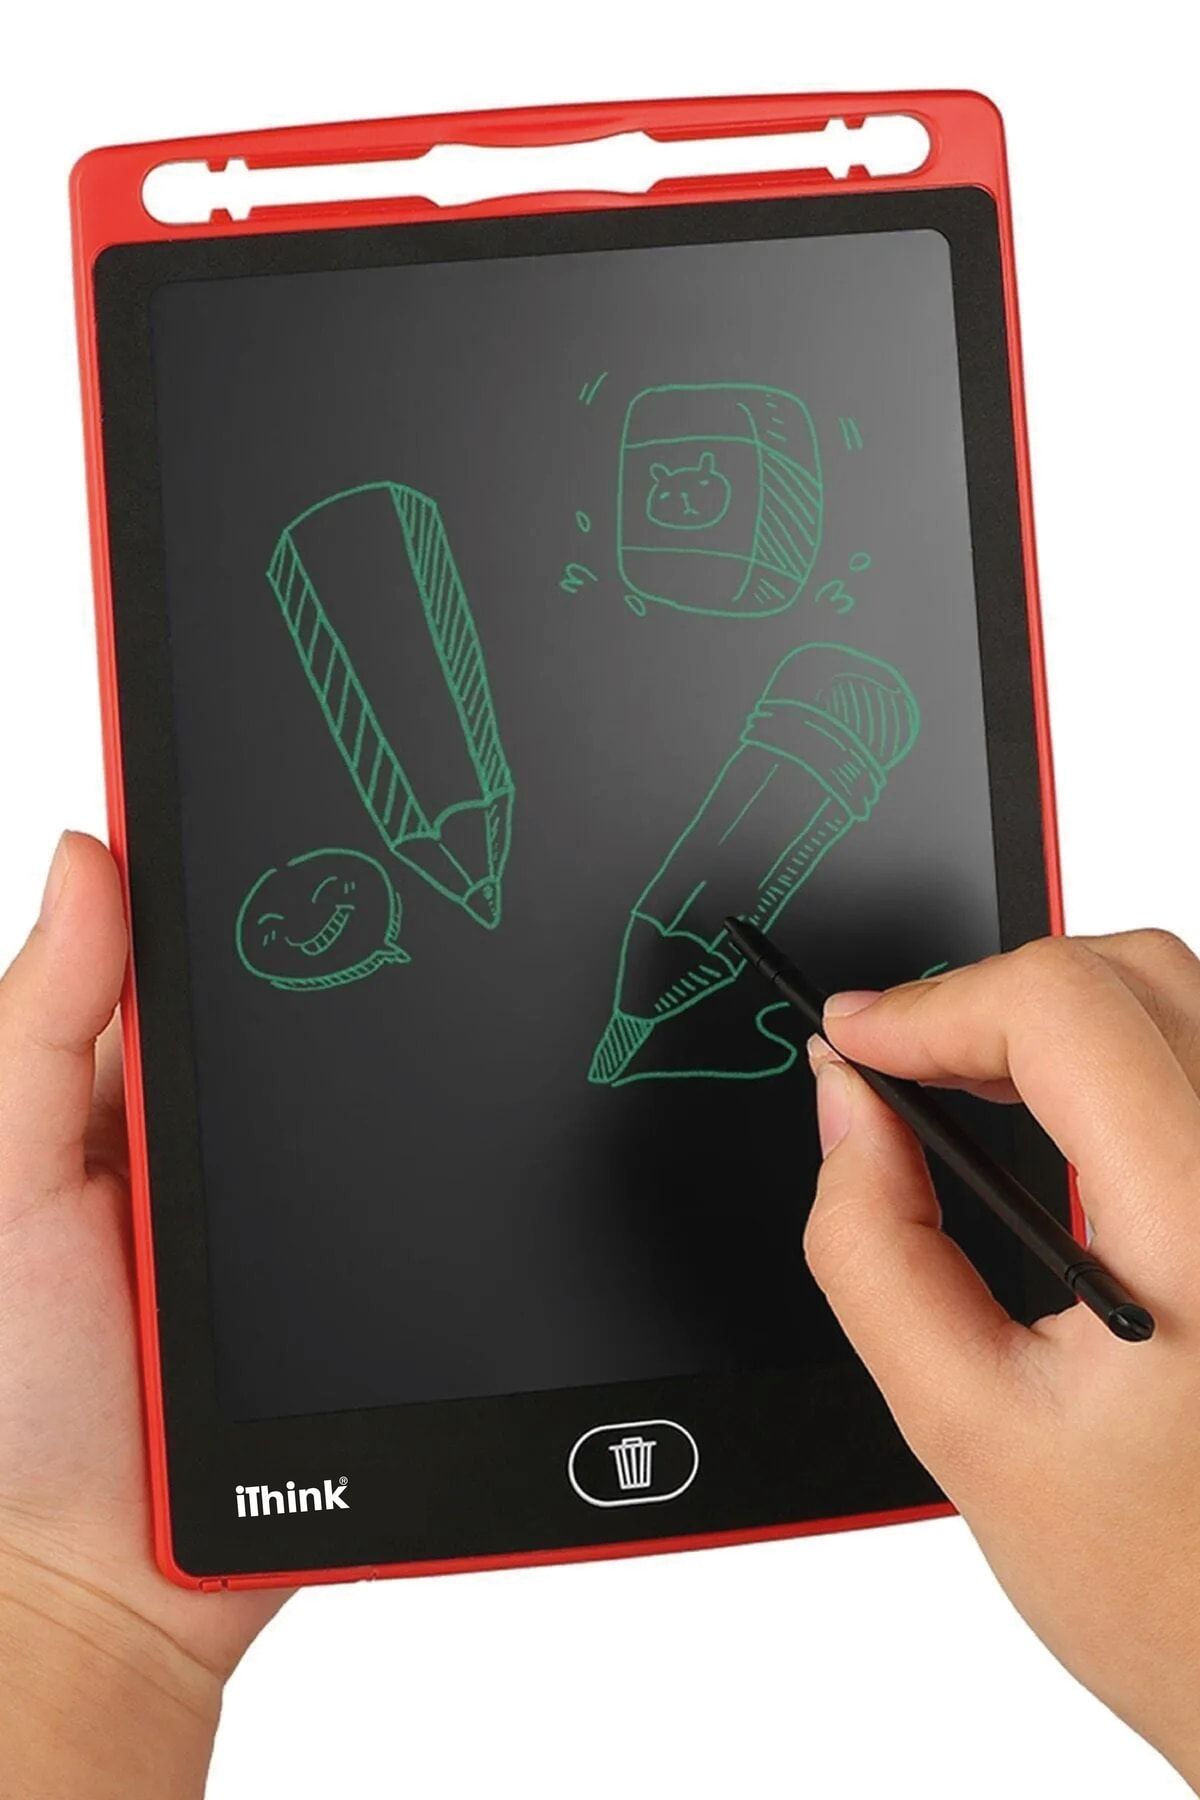 Ithink 8.5 Inc Dijital Yazı Ve Çizim Tableti Kırmızı